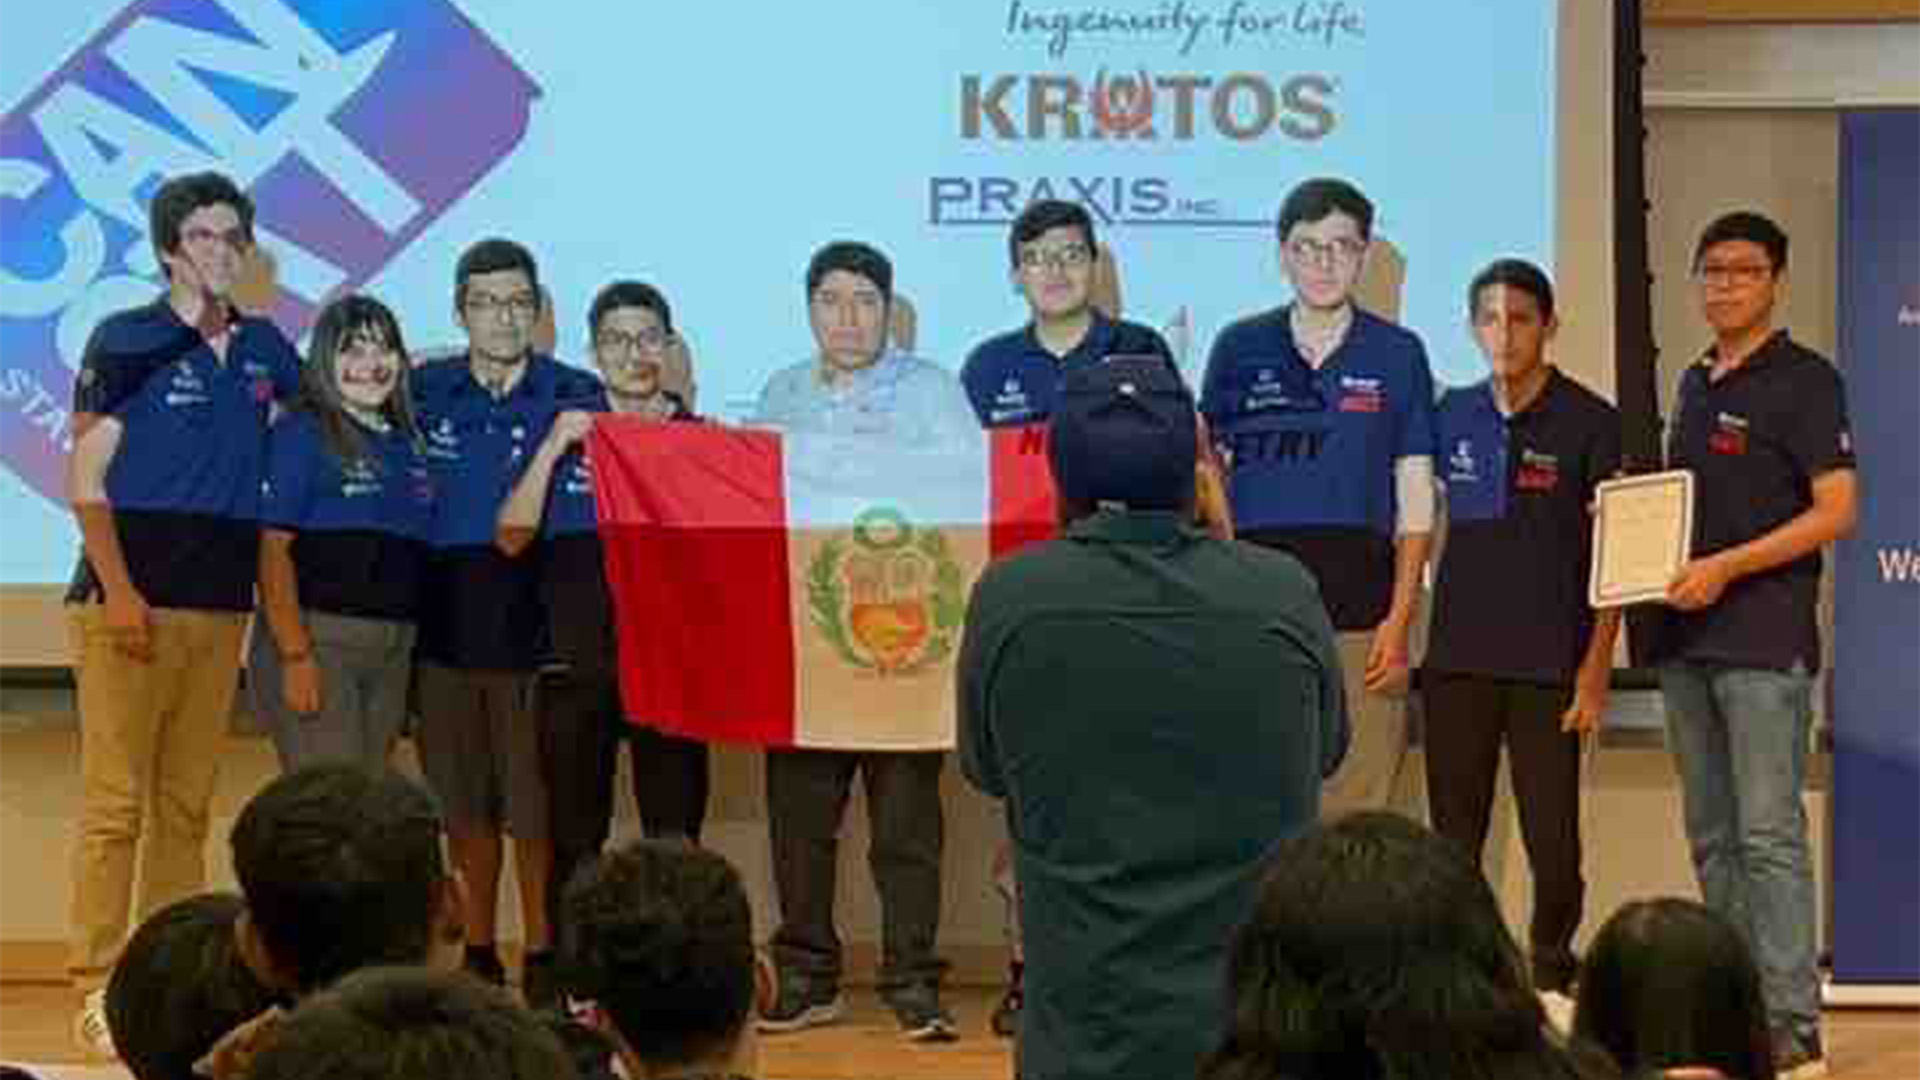 foto del MKTEAM PUCP: 10 personas con una bandera de perú